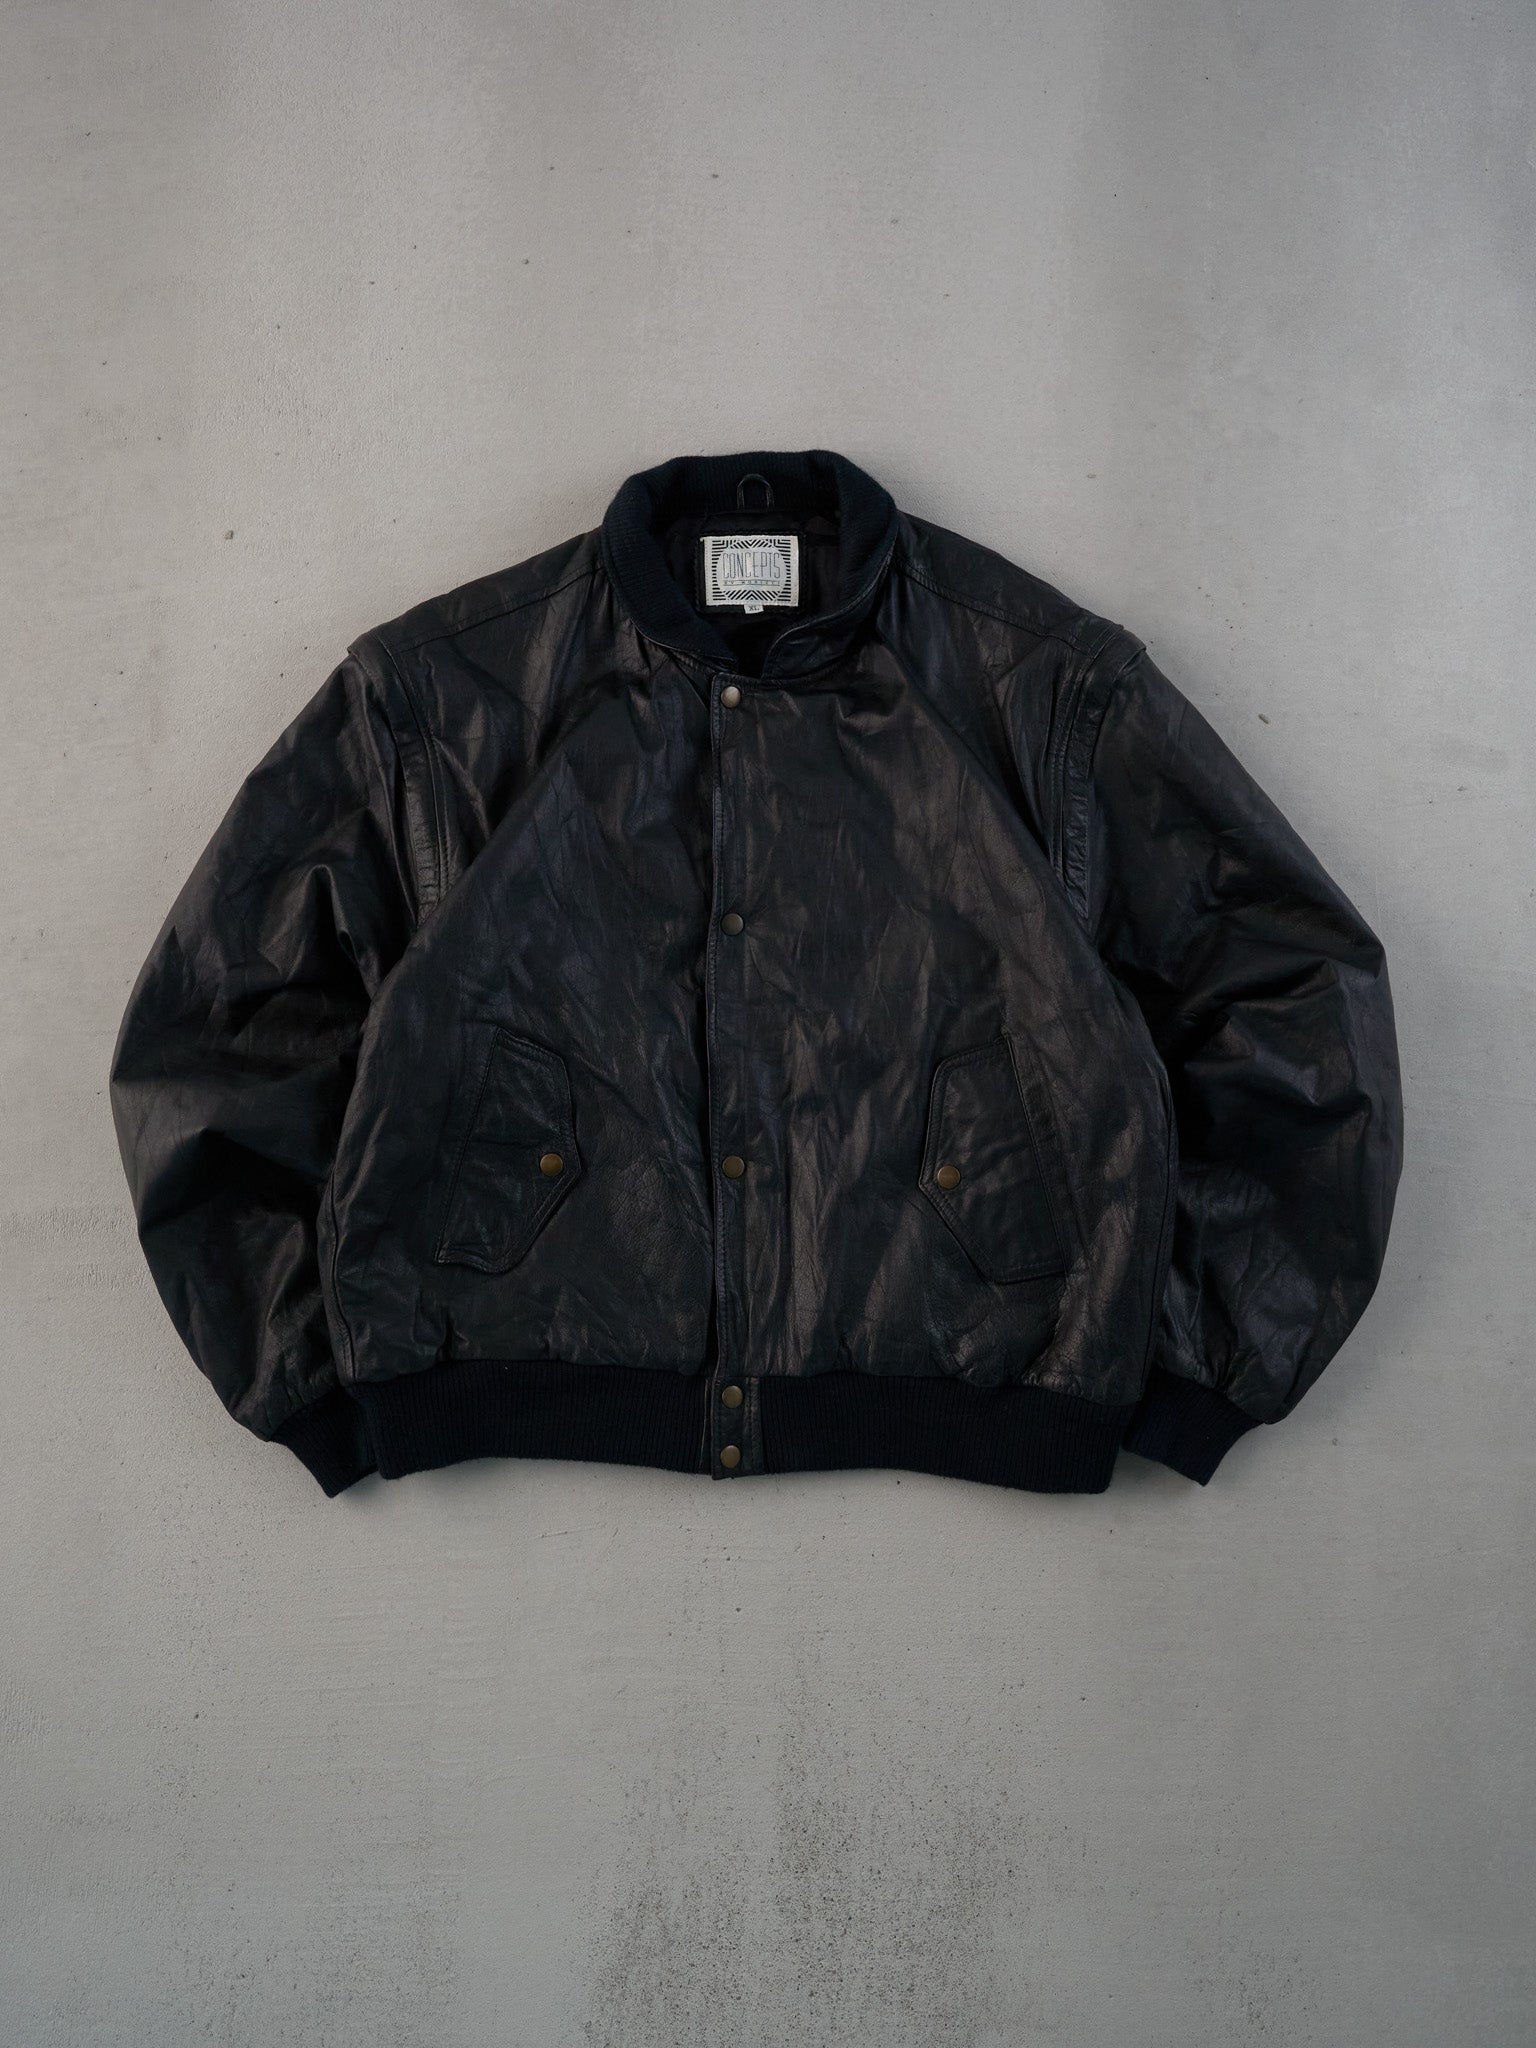 Vintage 90s Black Hardrock Cafe Dallas Collared Leather Jacket (L)